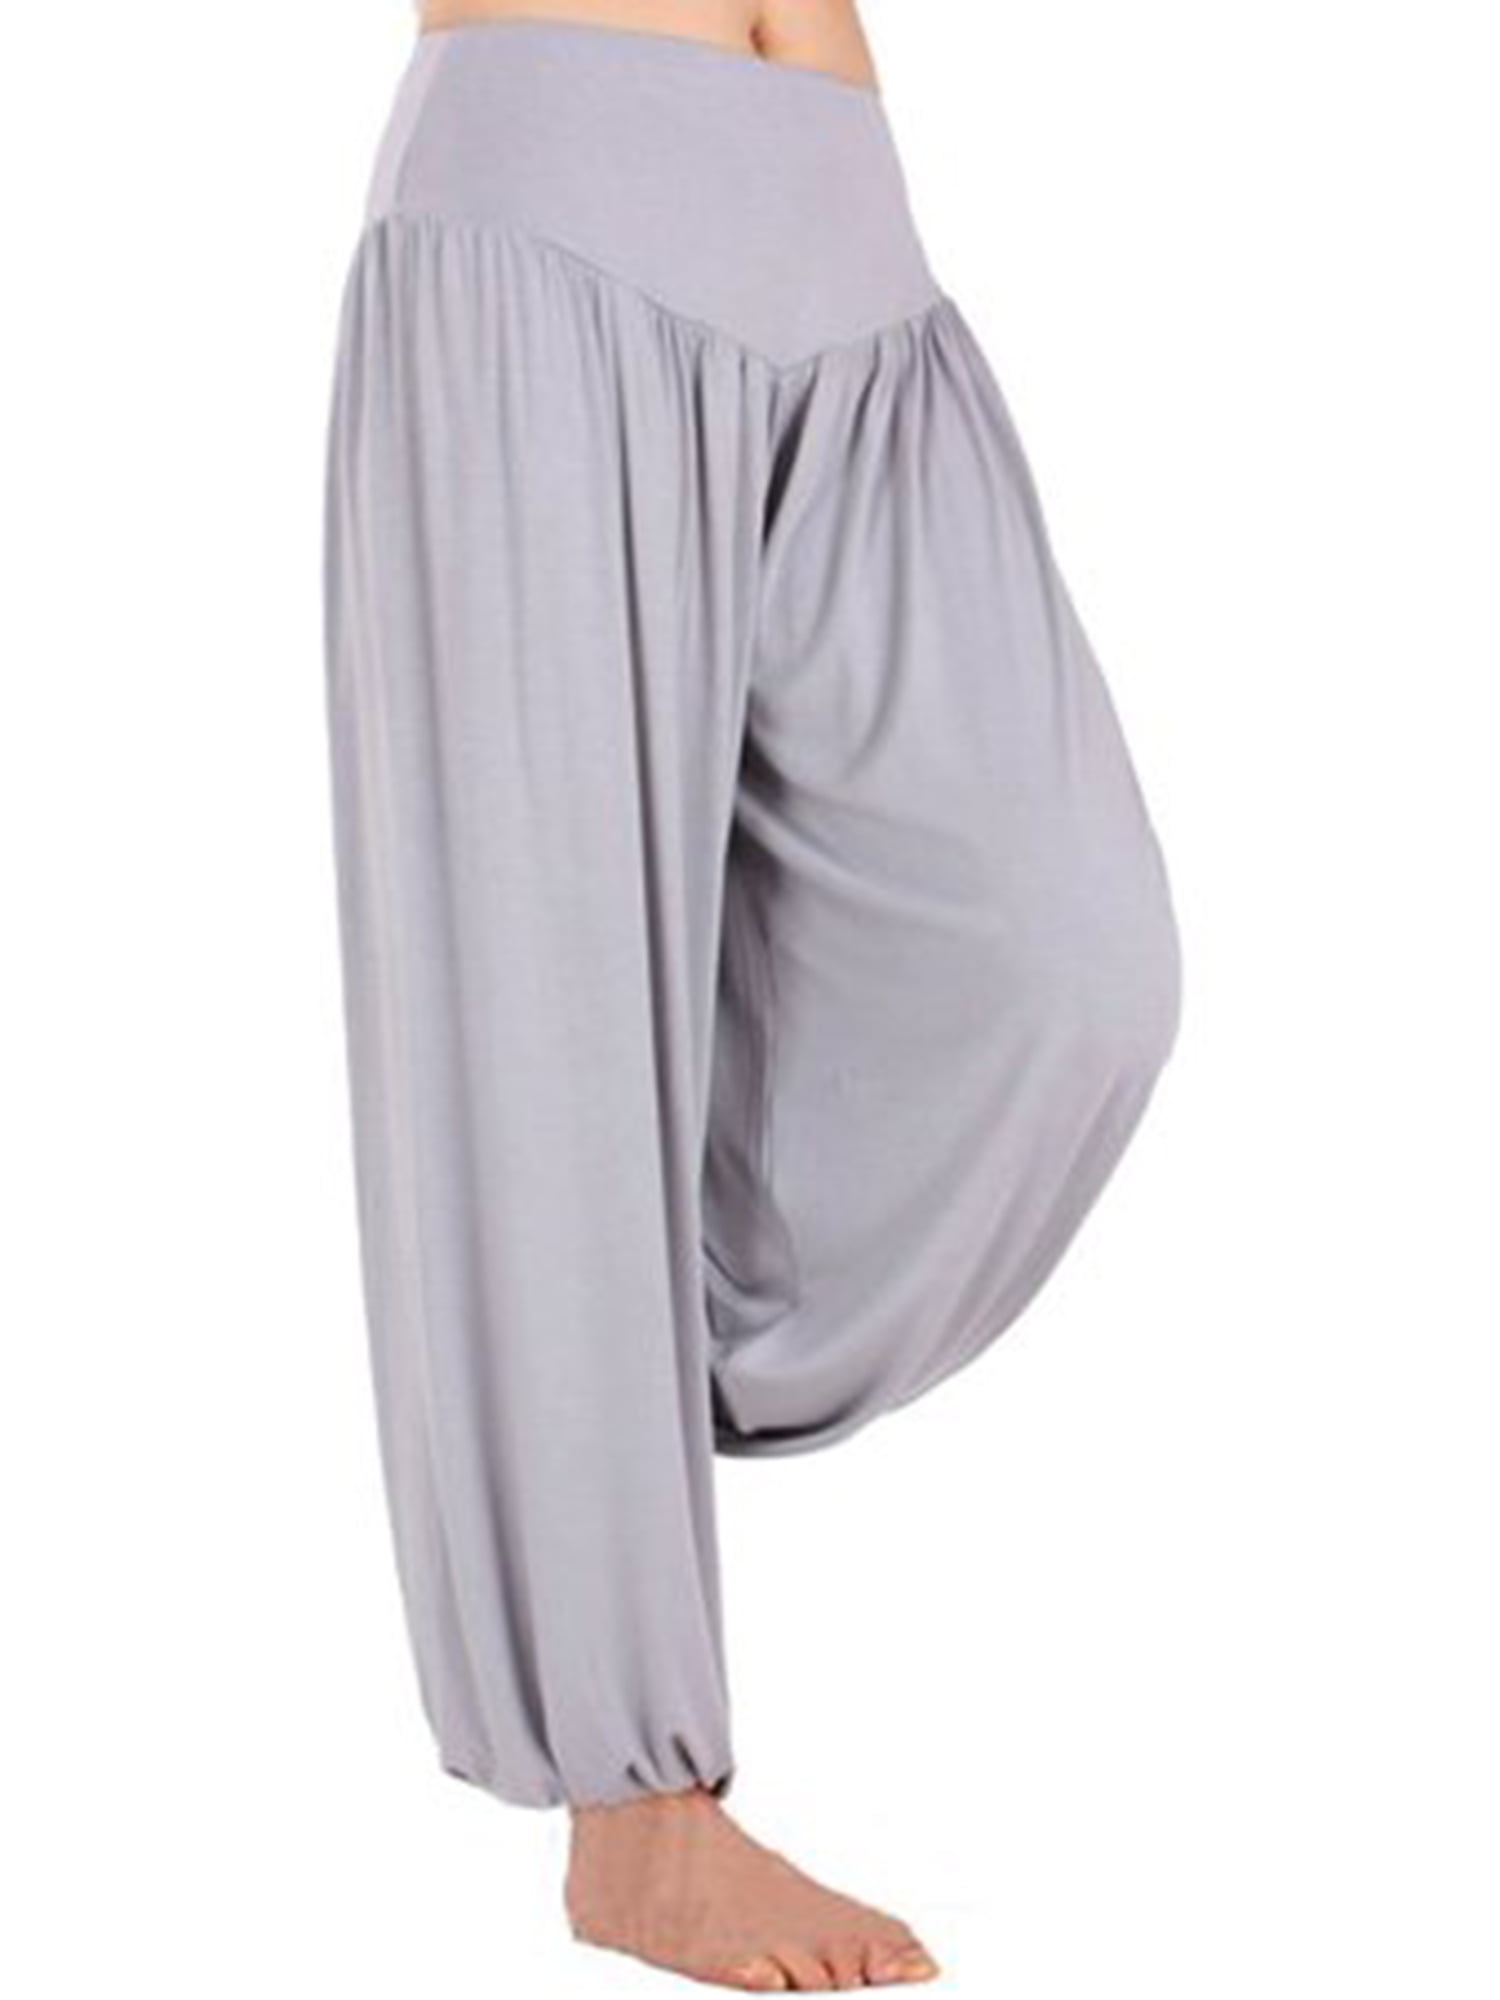 Hoerev Men Women Super Soft Yoga Pants Trousers Taiji Lounge Pant 